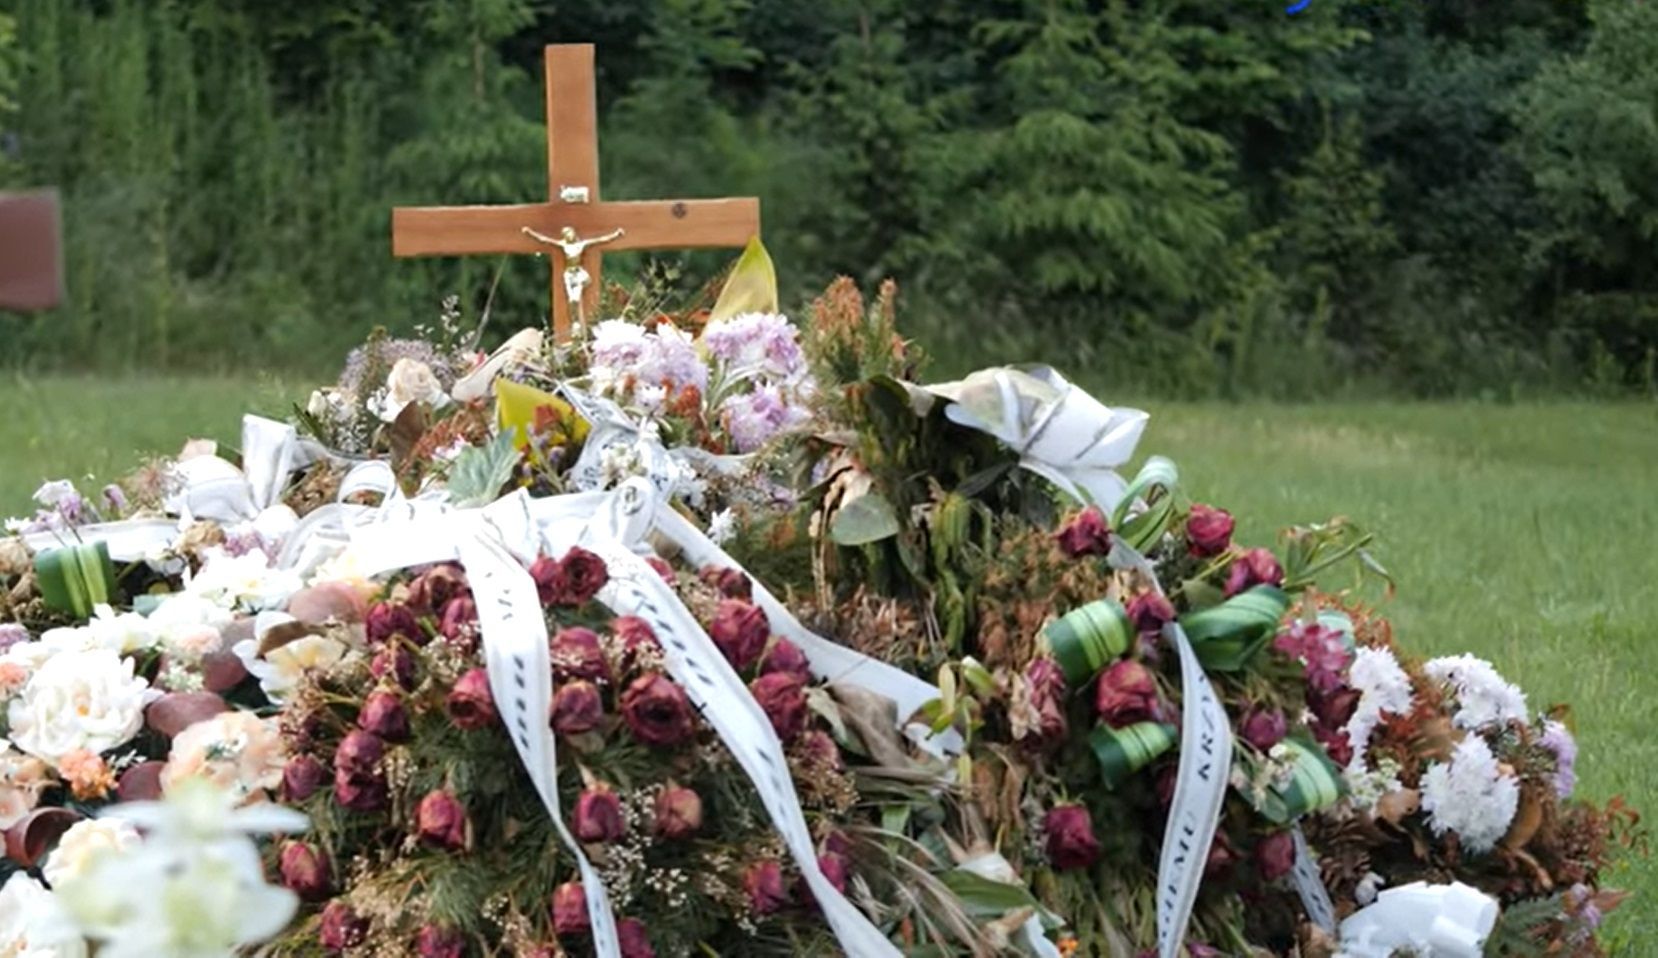 Dwa tygodnie po pogrzebie grób wciąż zakryty jest przez kwiaty i znicze